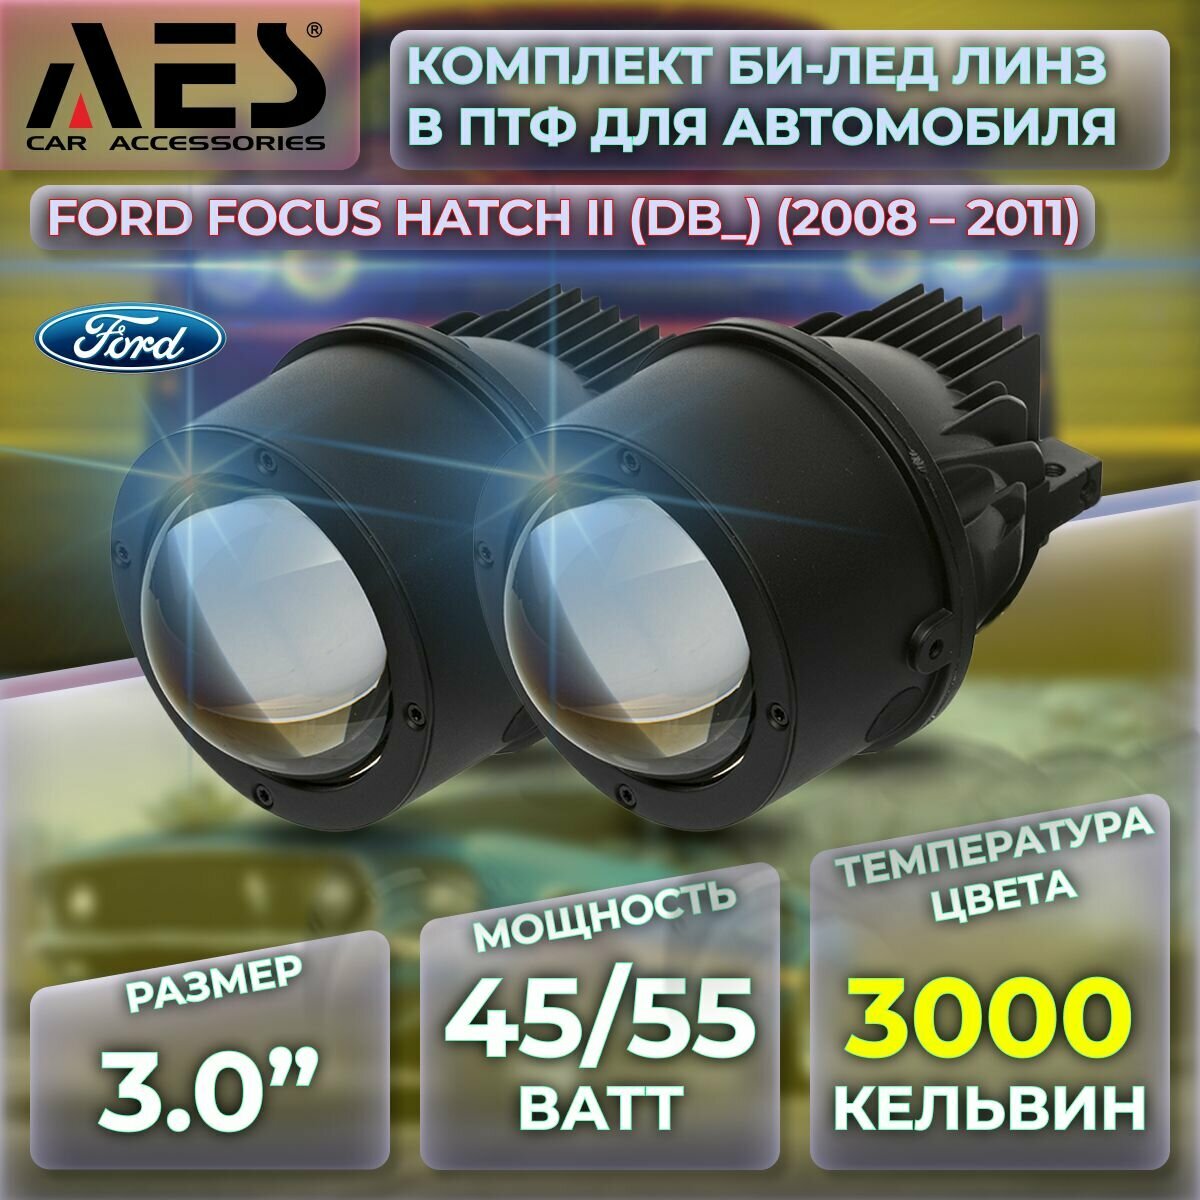 Комплект Би-лед линз в ПТФ для Ford Focus хэтчбек II (DB) (2008-2011) Q8 Foglight Bi-LED Laser 3000K (2 модуля 2 кронштейна)